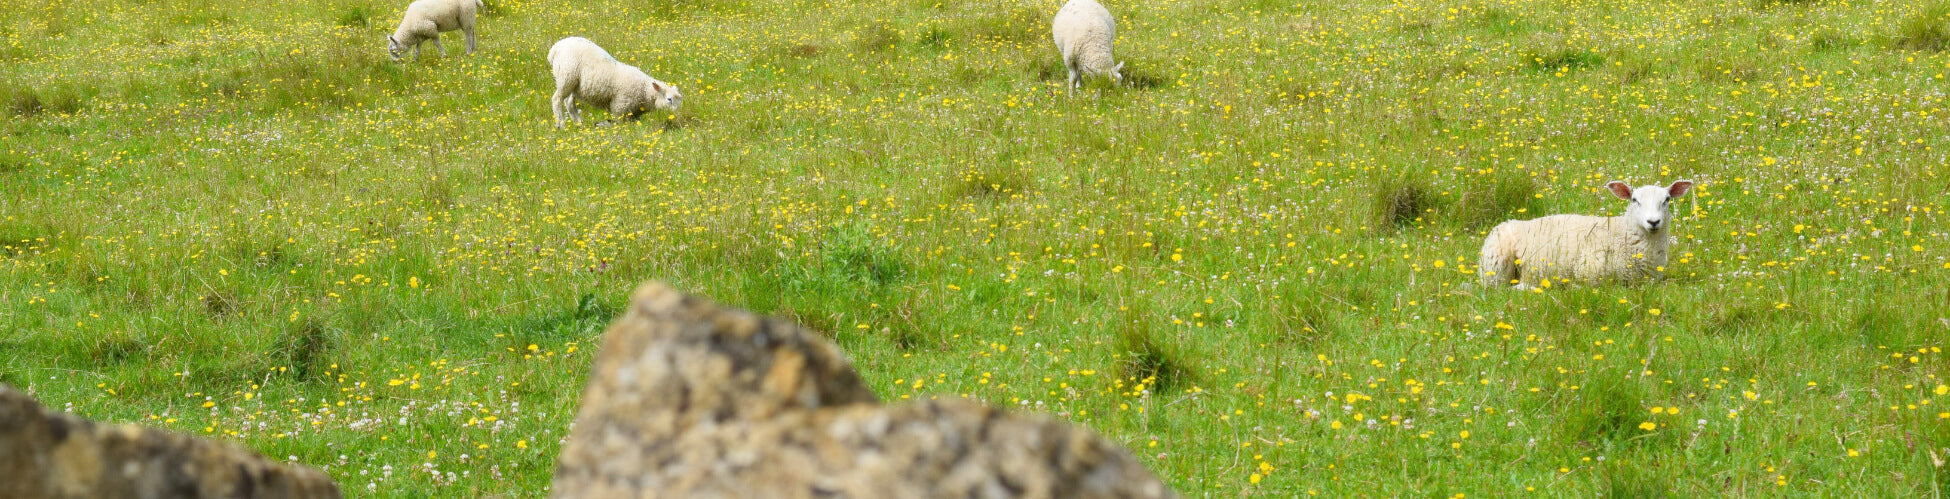 sheep lying in field